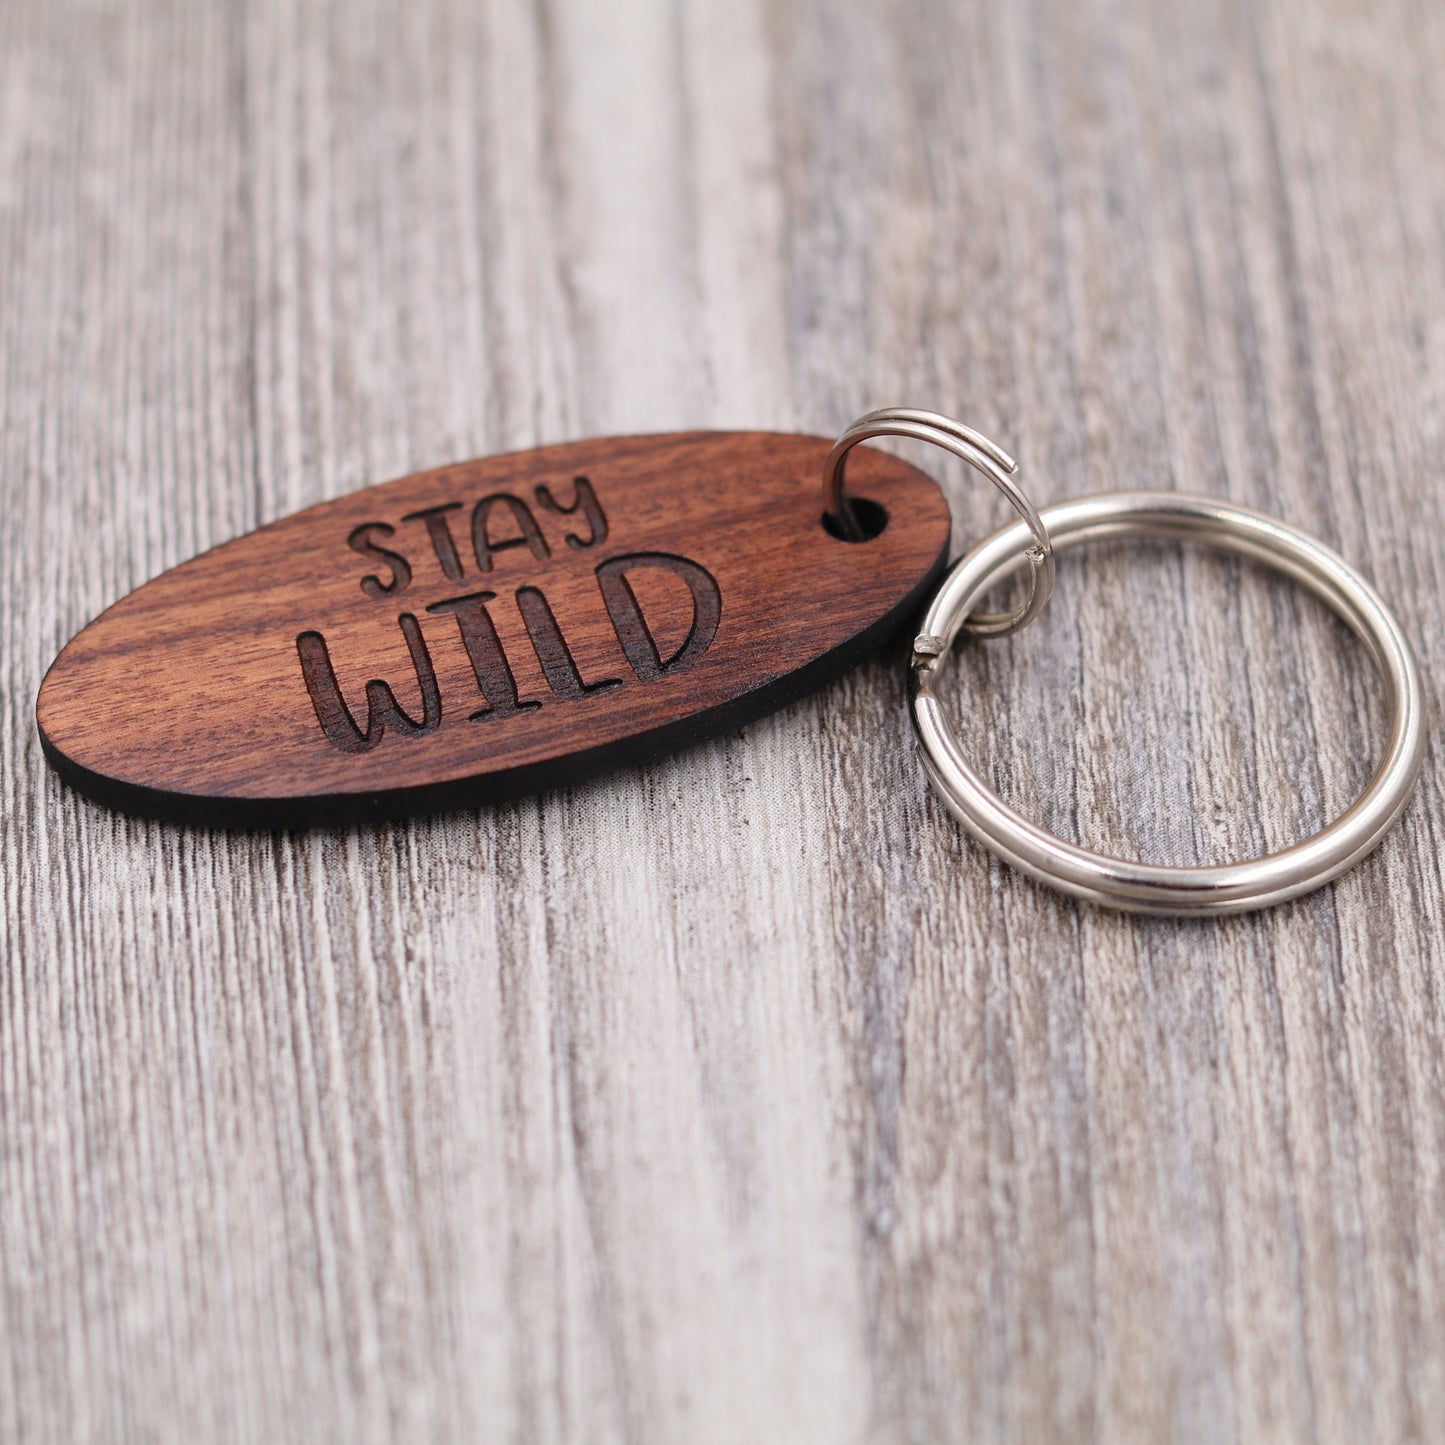 Stay Wild Keychain